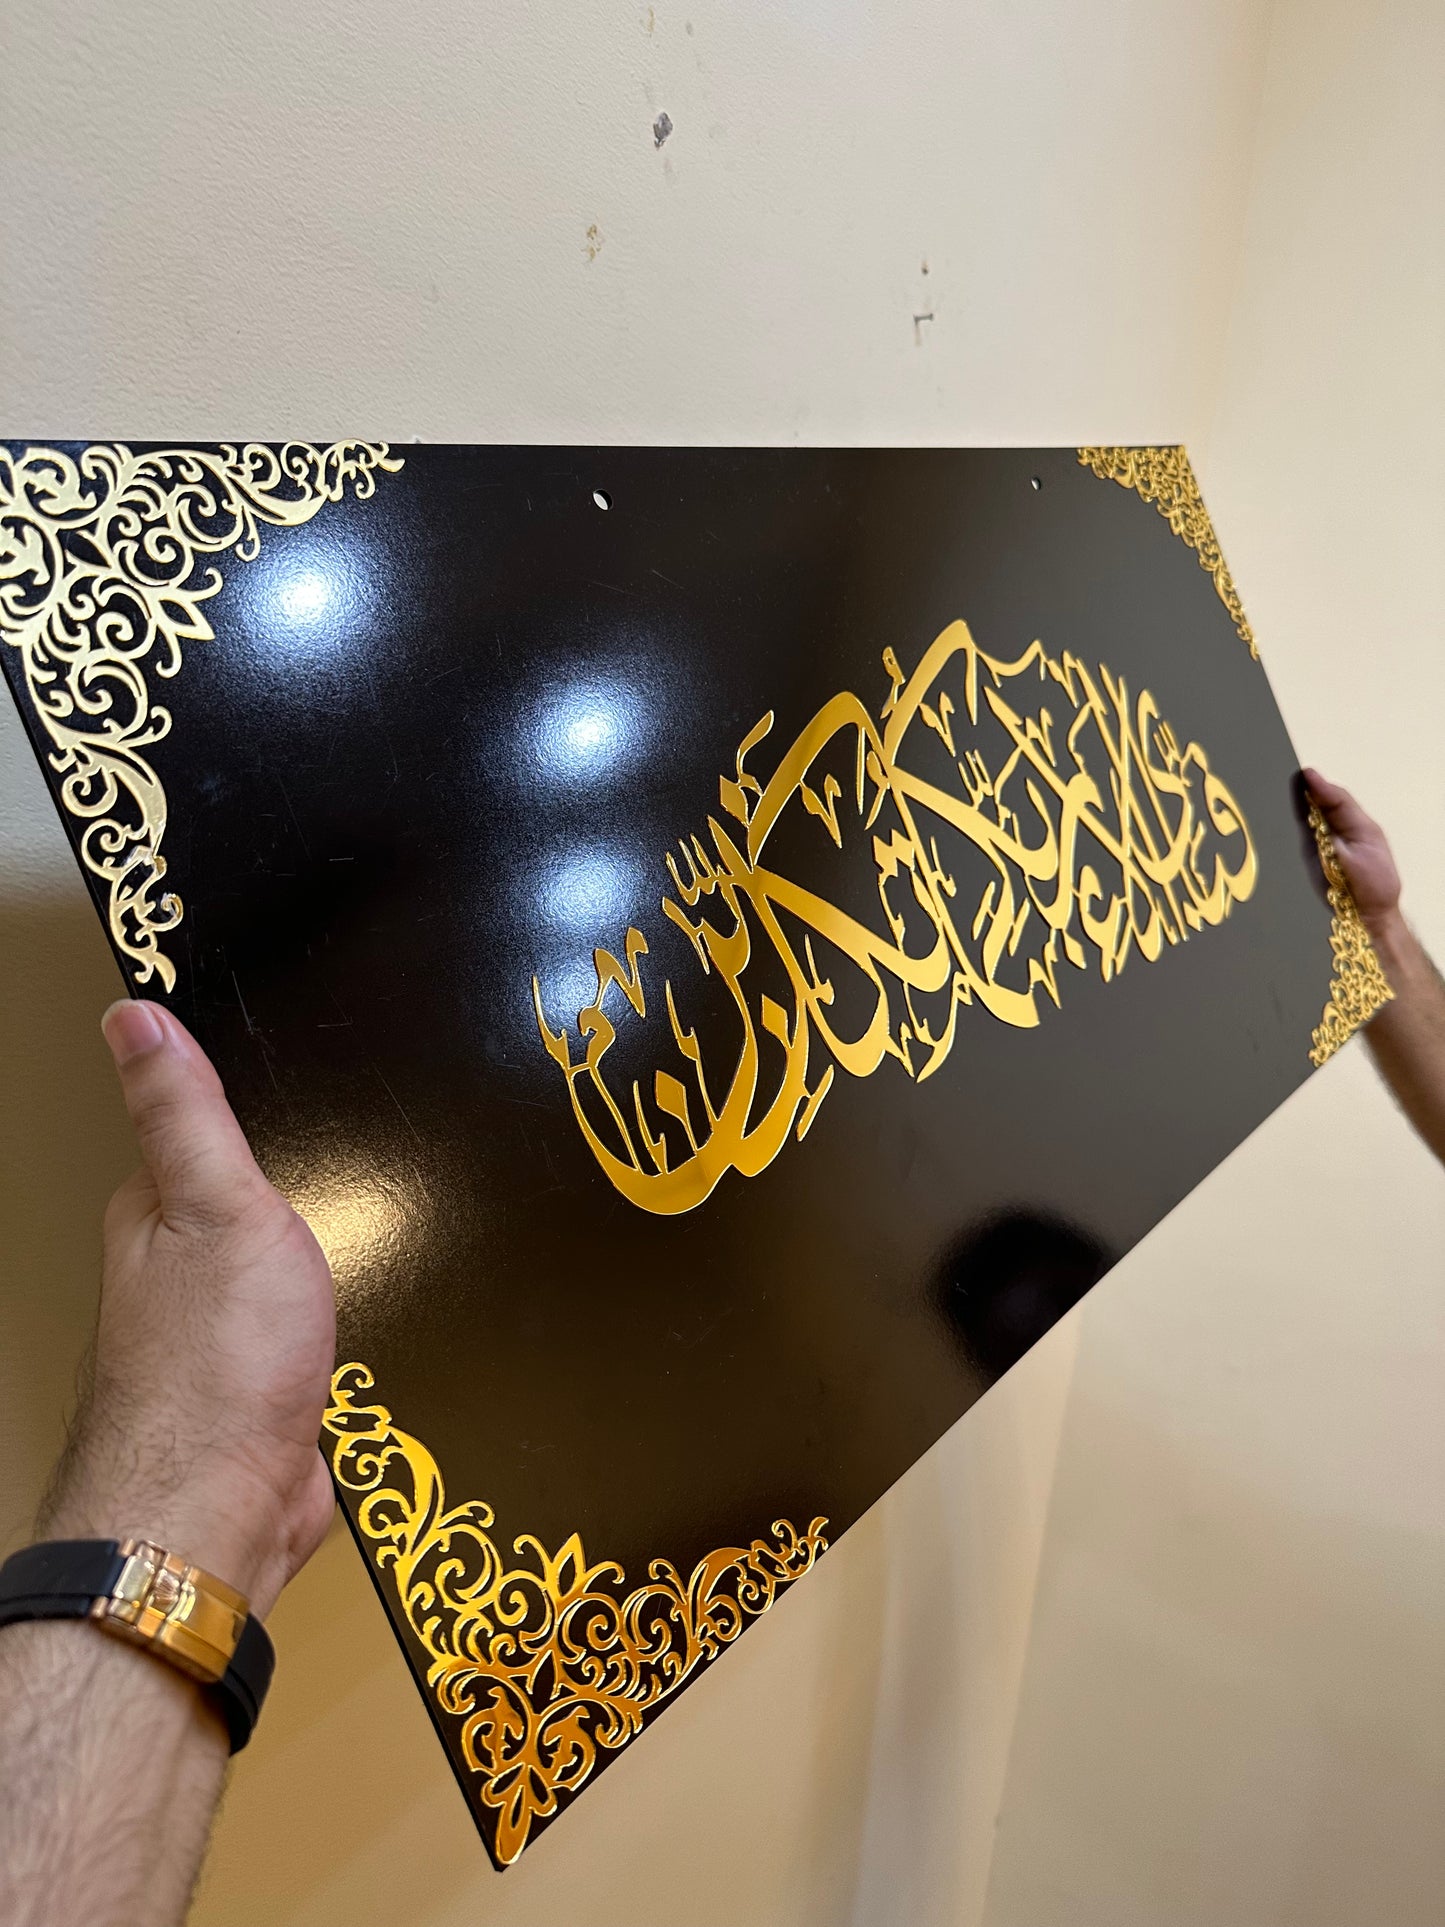 Fabi ayyi aalaa'i rabbikuma tukaththibaan," Large Size islamic Wall frame - IC - 191